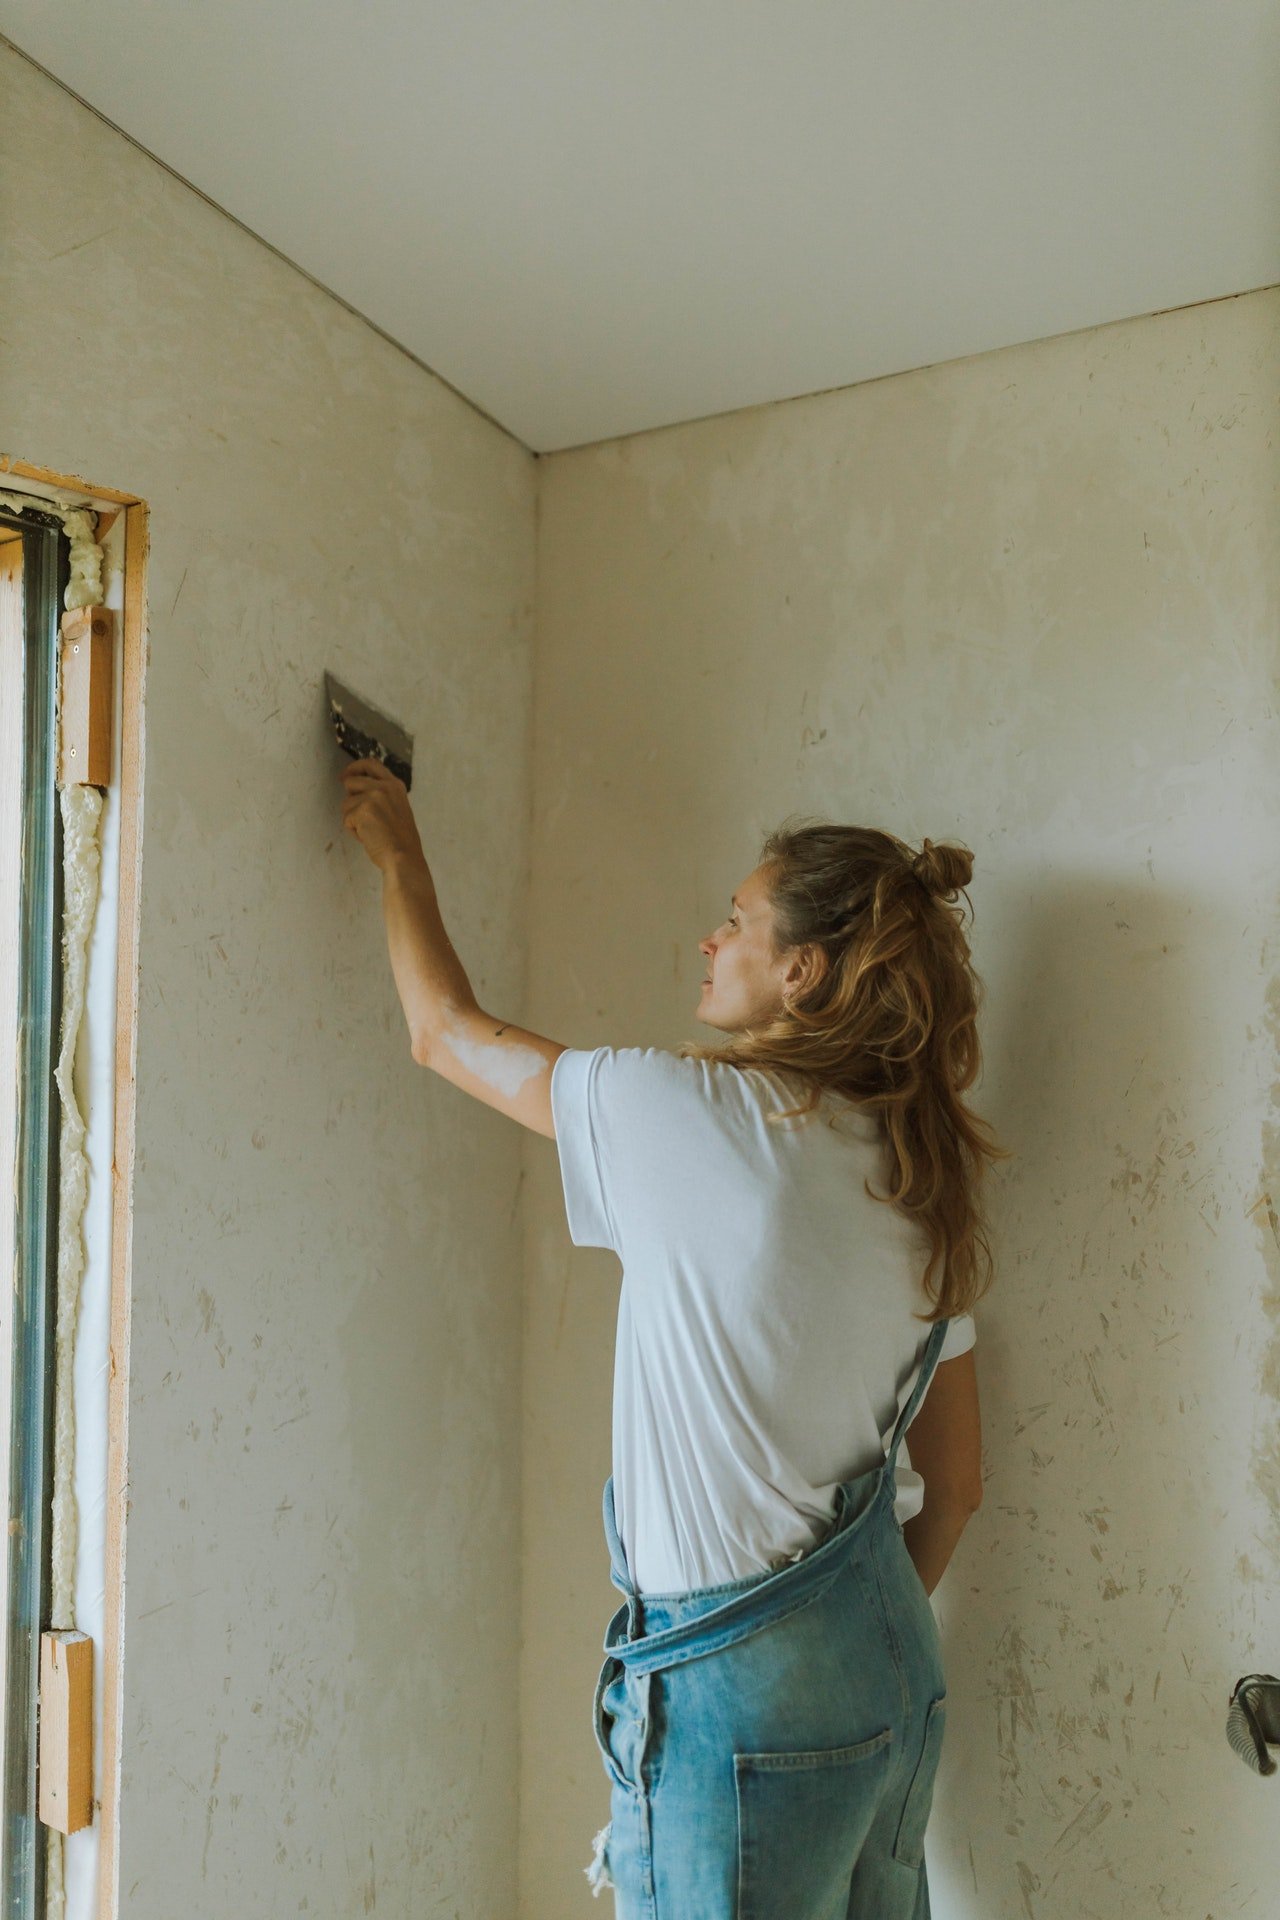 Anne kündigte ihren Job, zog zurück und reparierte das Haus ihrer Eltern. | Quelle: Pexels